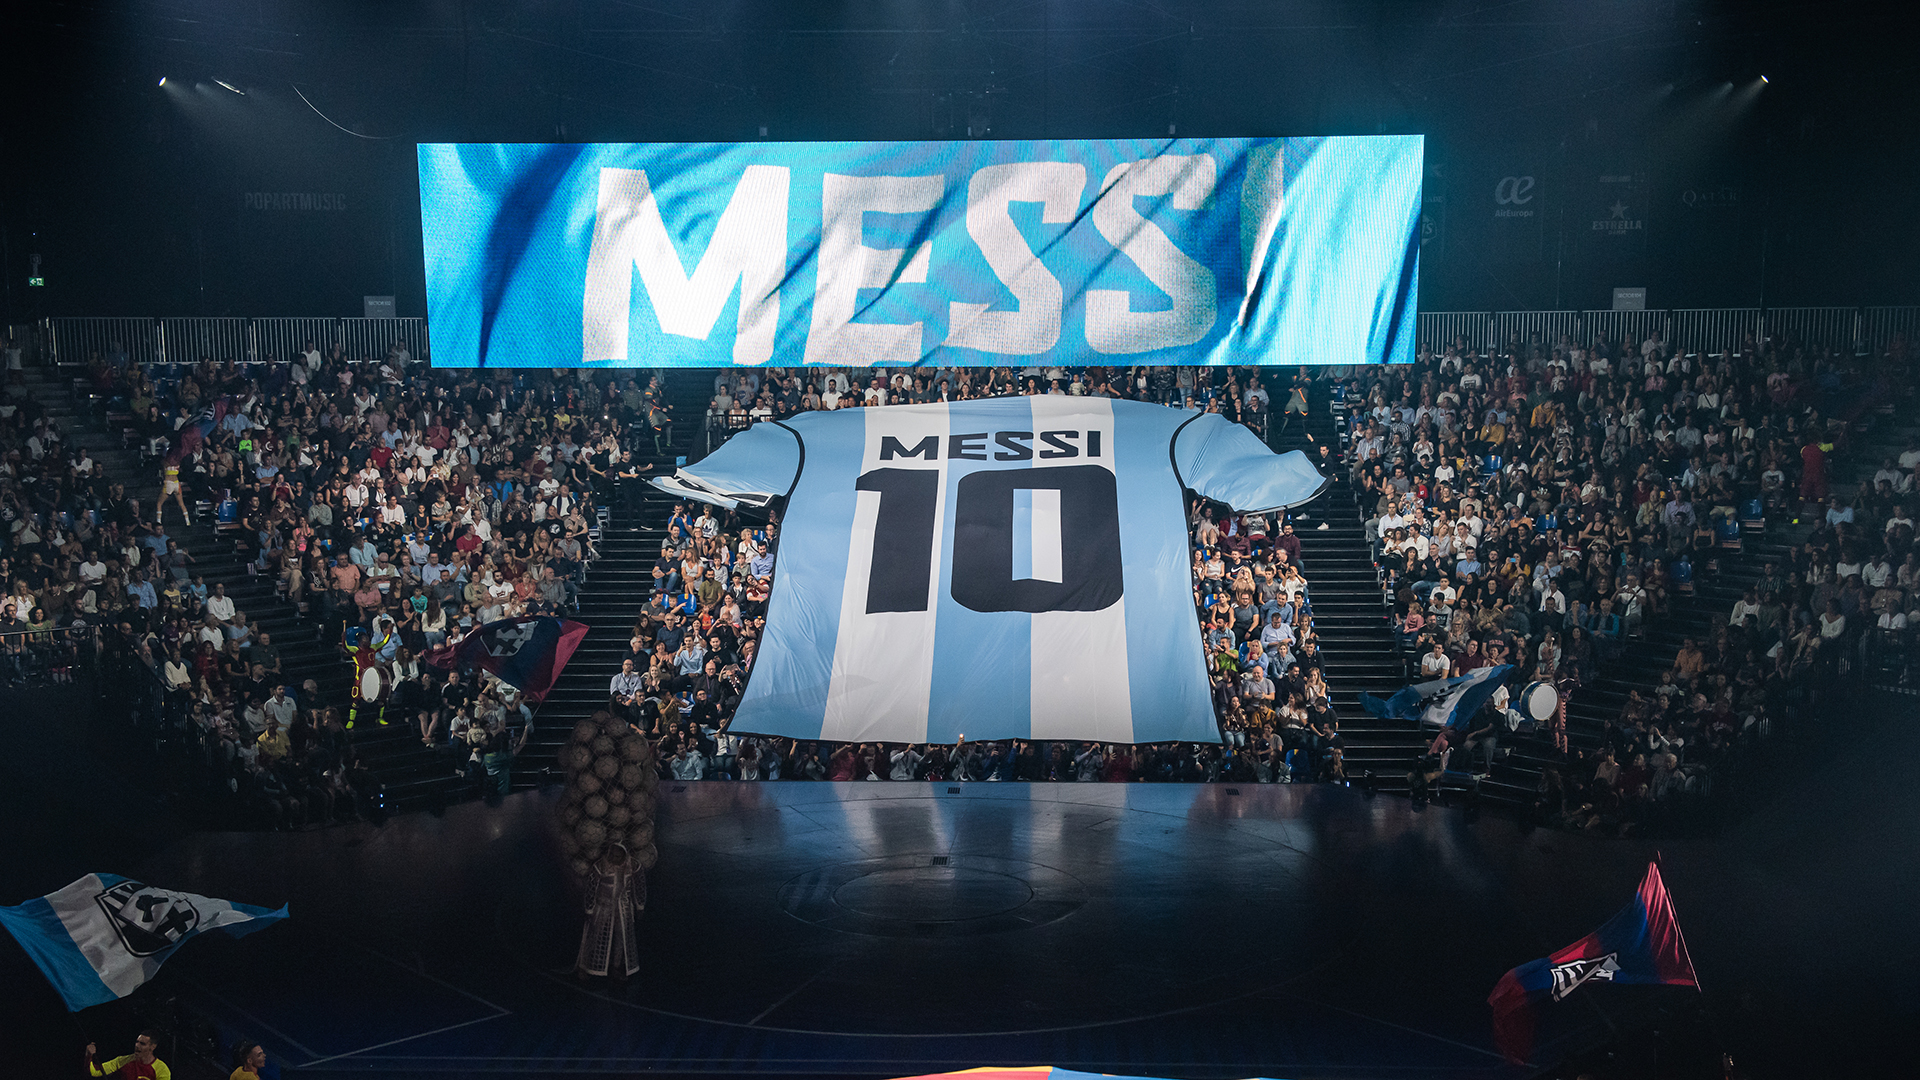 Messi10, el nuevo espectáculo del Cirque Du Soleil, llegará a la Argentina: cuándo se estrenará y en qué provincia